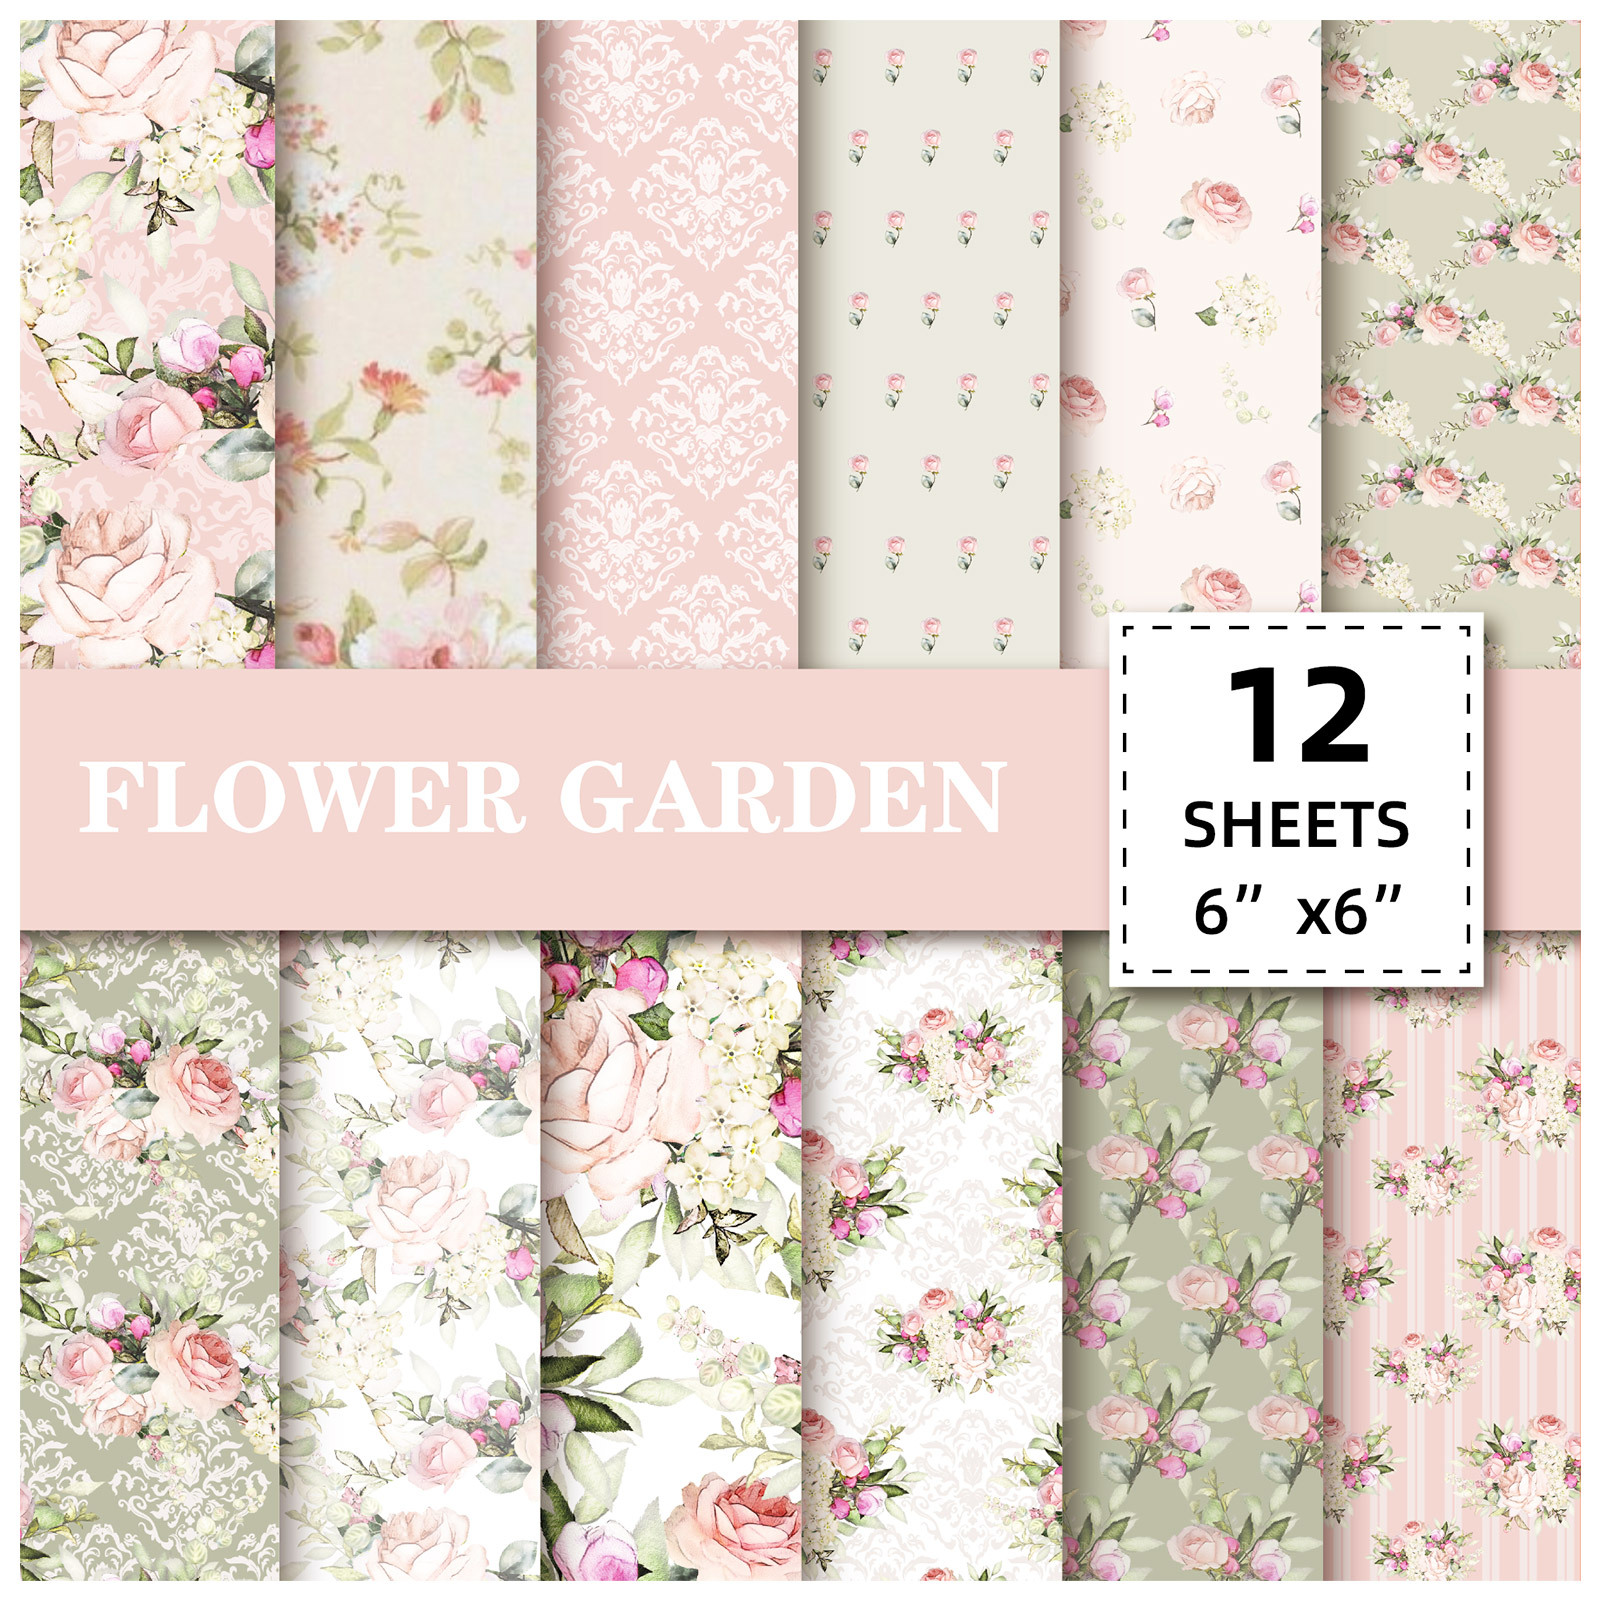 Floral Elegance 12-Sheet Scrapbook Paper Pack - DIY Album & Journal Backgrounds